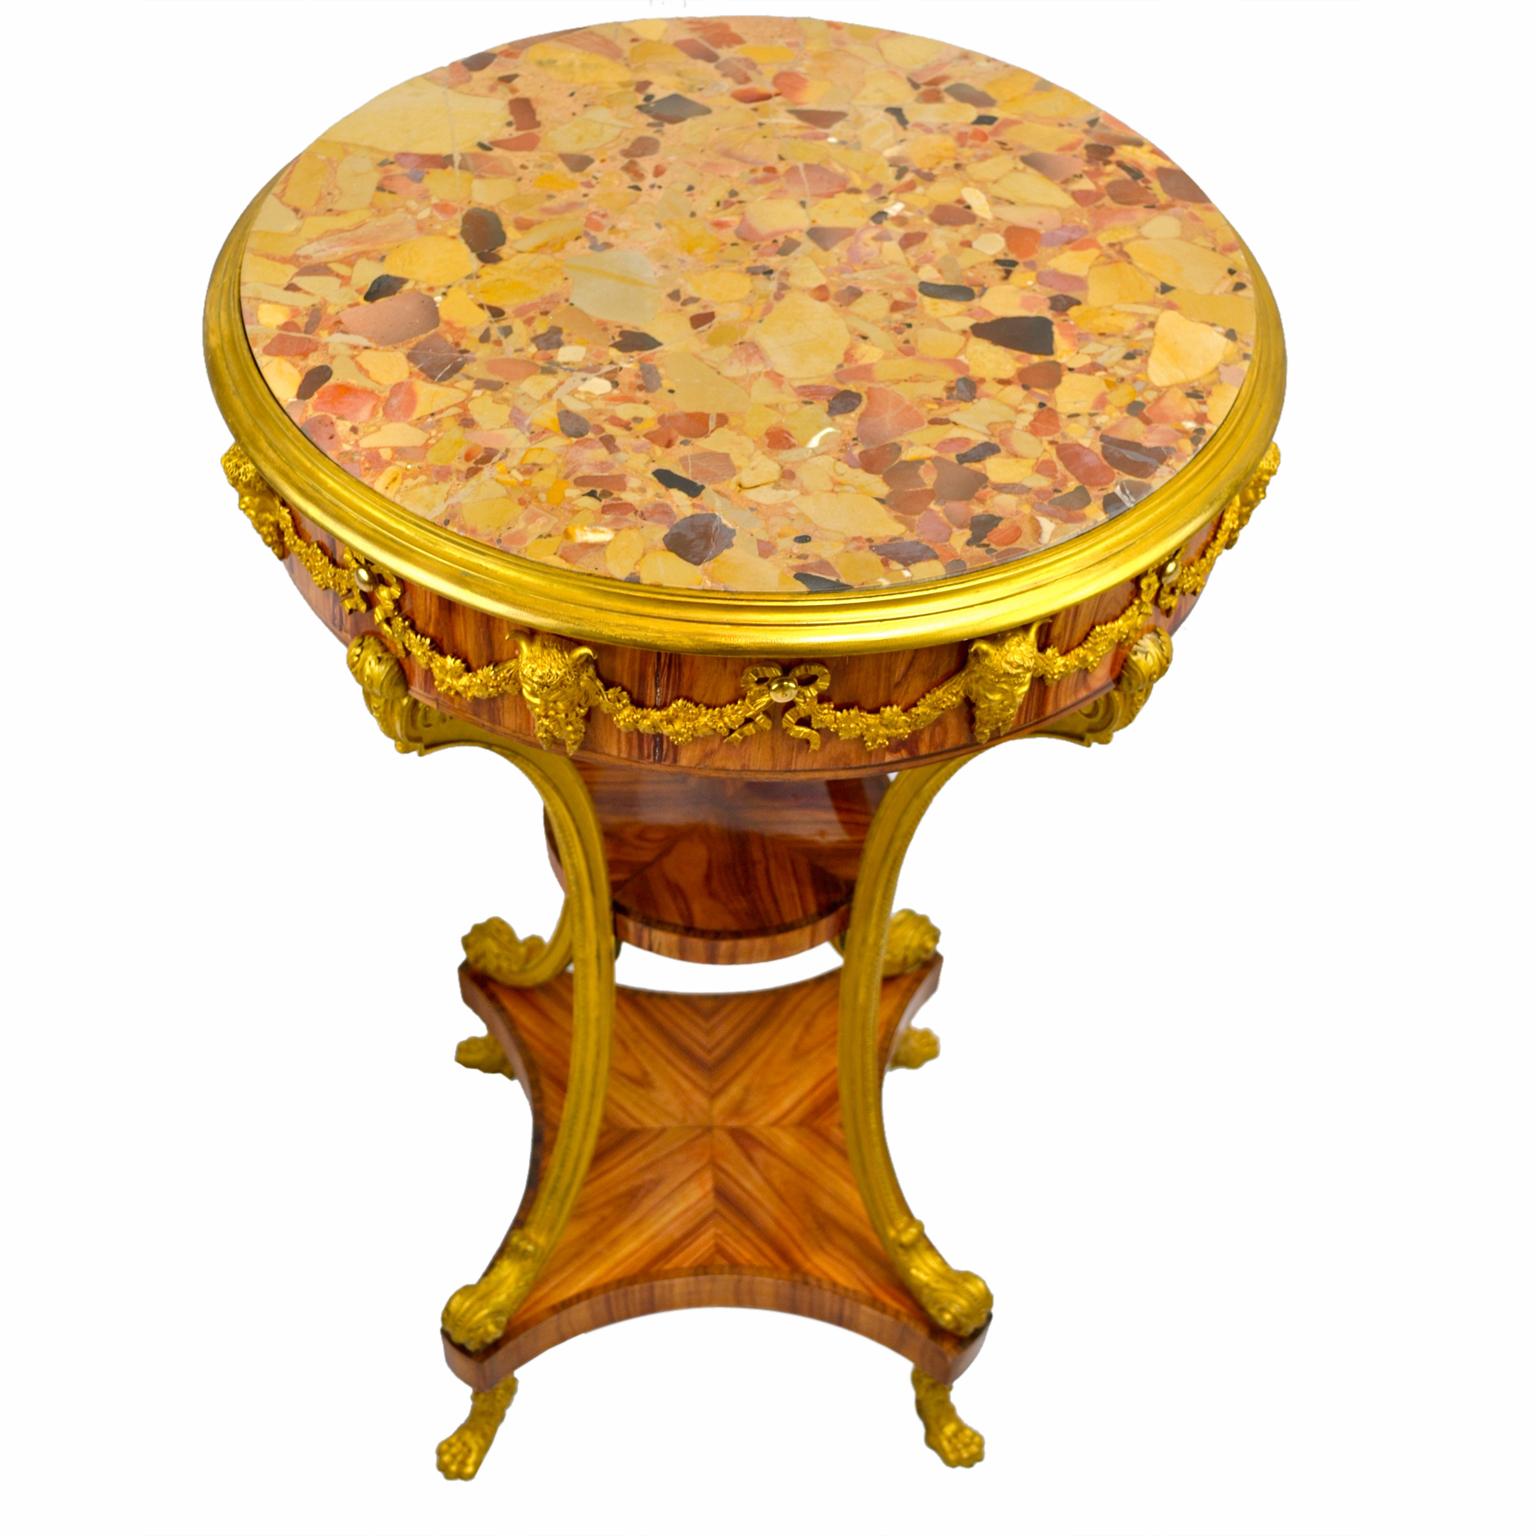 Table d'appoint/de centre ronde très décorative de style Louis XVI ; le plateau en marbre Brèche d'Alp a une bordure en bronze doré au-dessus d'une jupe en bois de tulipier décorée en ronde avec des masques de satyre et des guirlandes dorés ; quatre